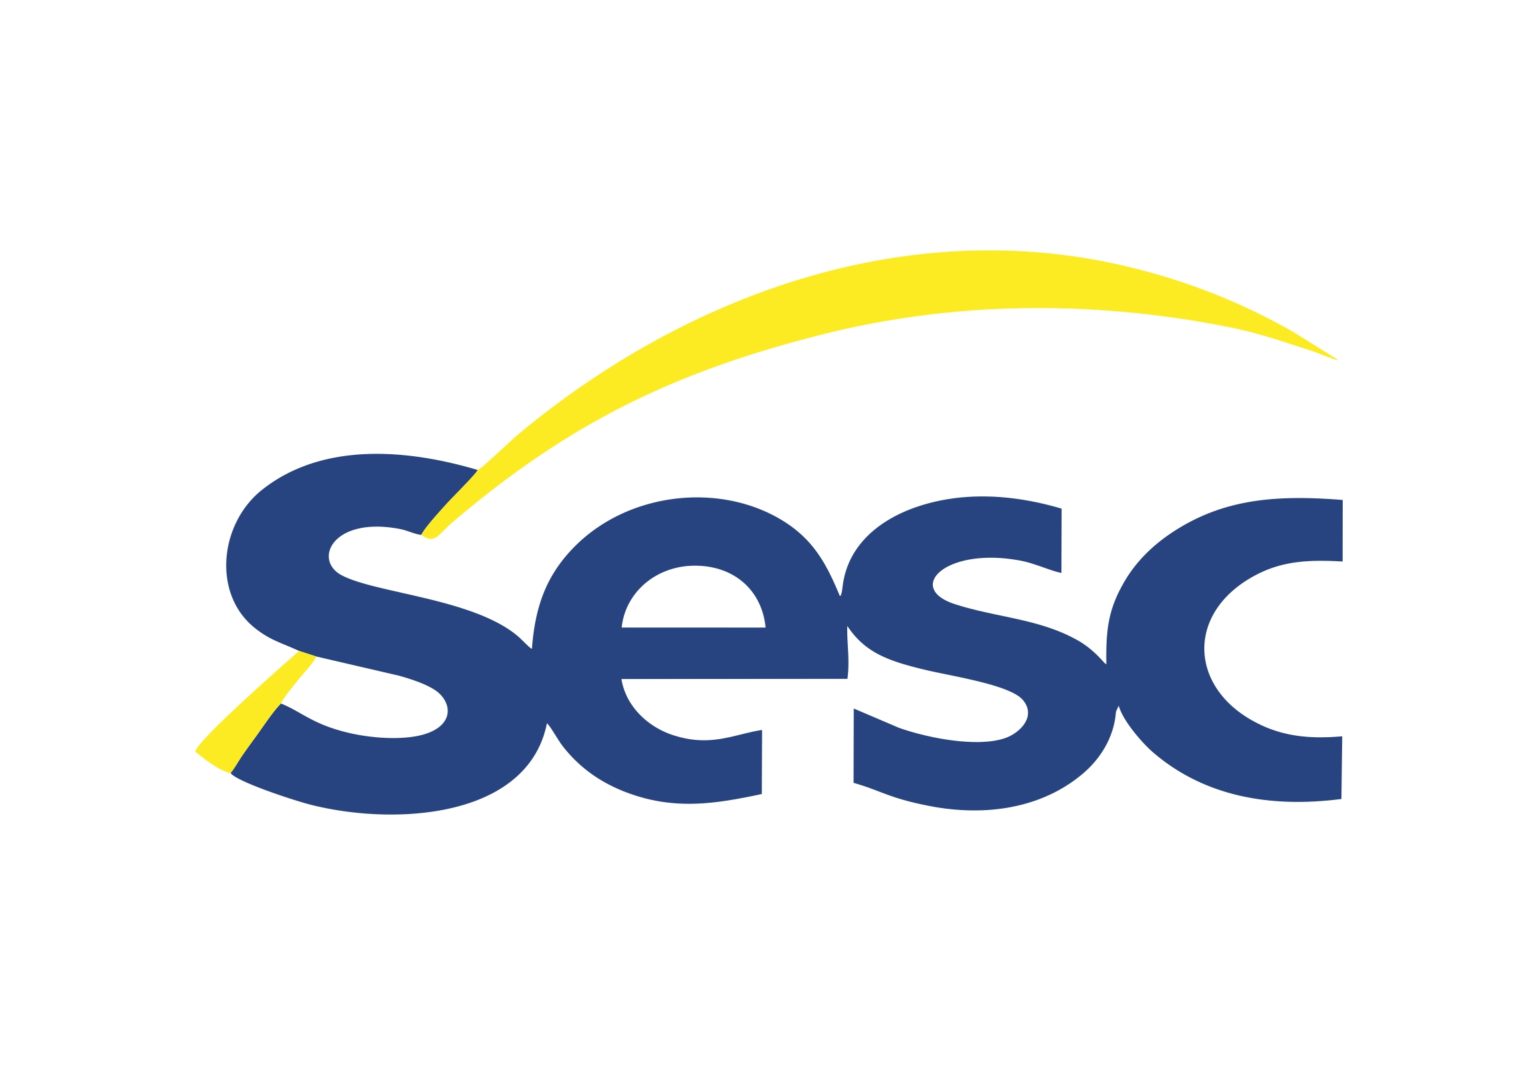 sesc-logo-2012-jpeg